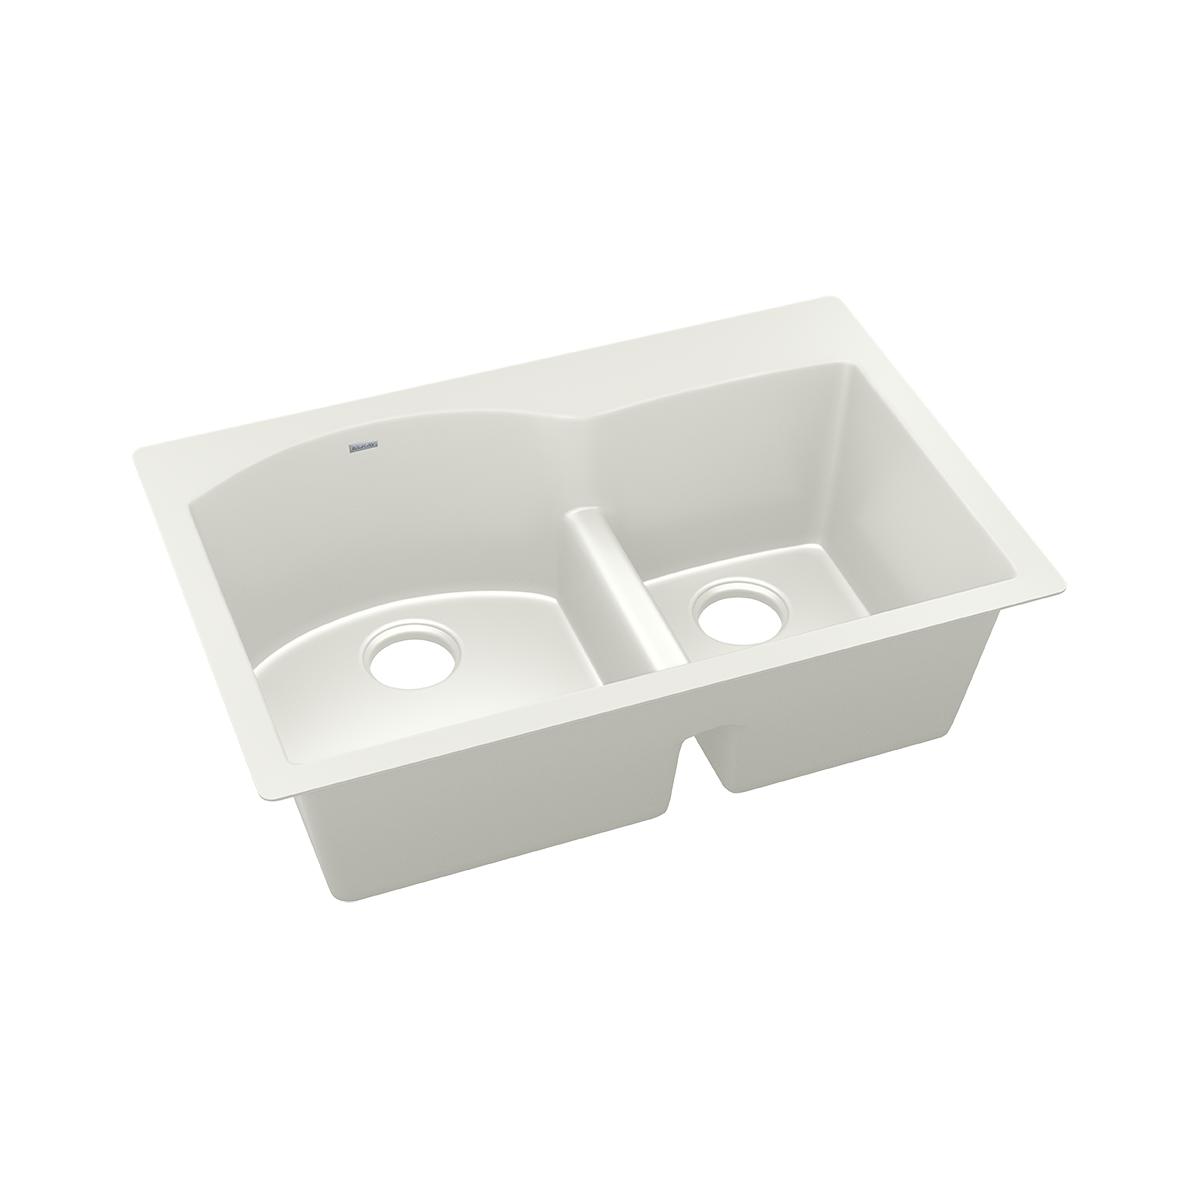 Elkay Quartz Luxe 33" x 22" x 10", Offset 60/40 Double Bowl Drop-in Sink with Aqua Divide, Parchment